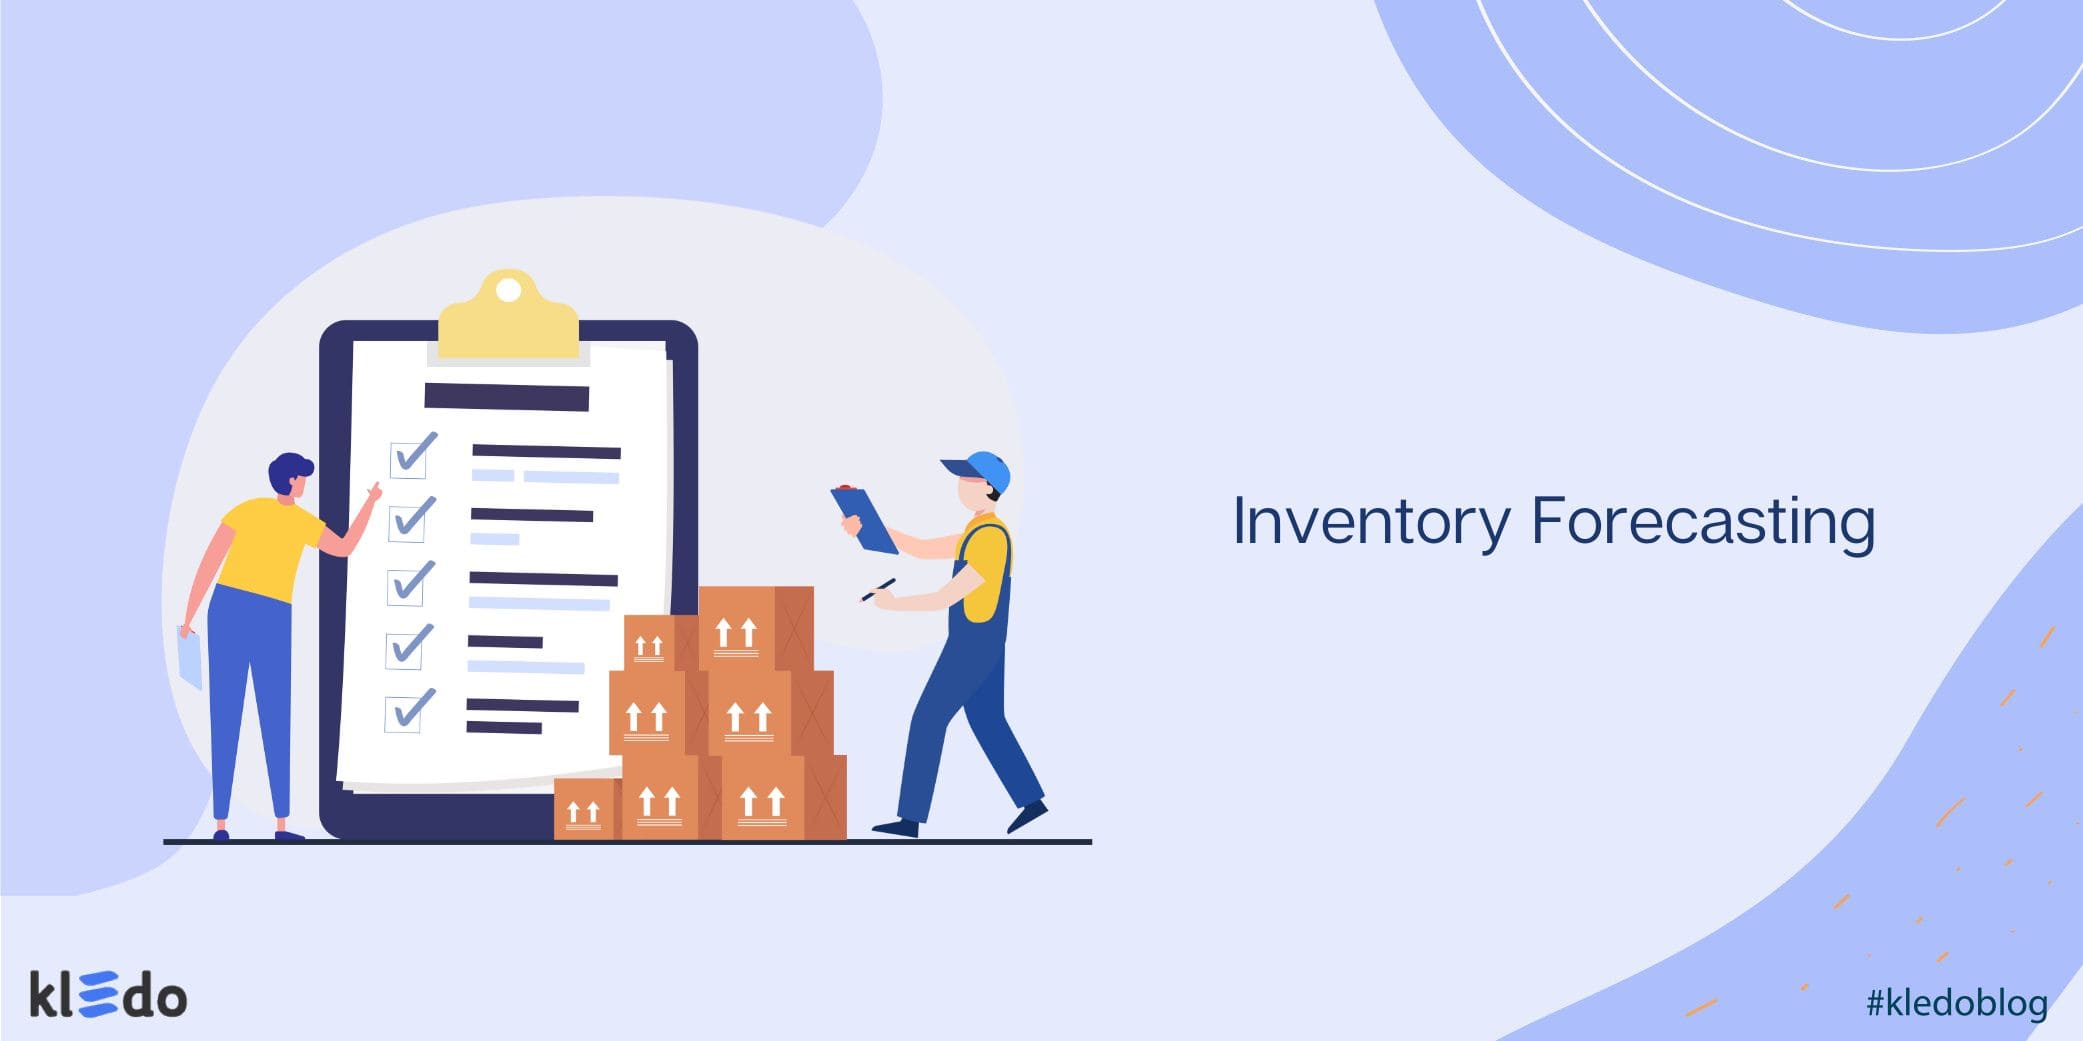 Inventory forecasting